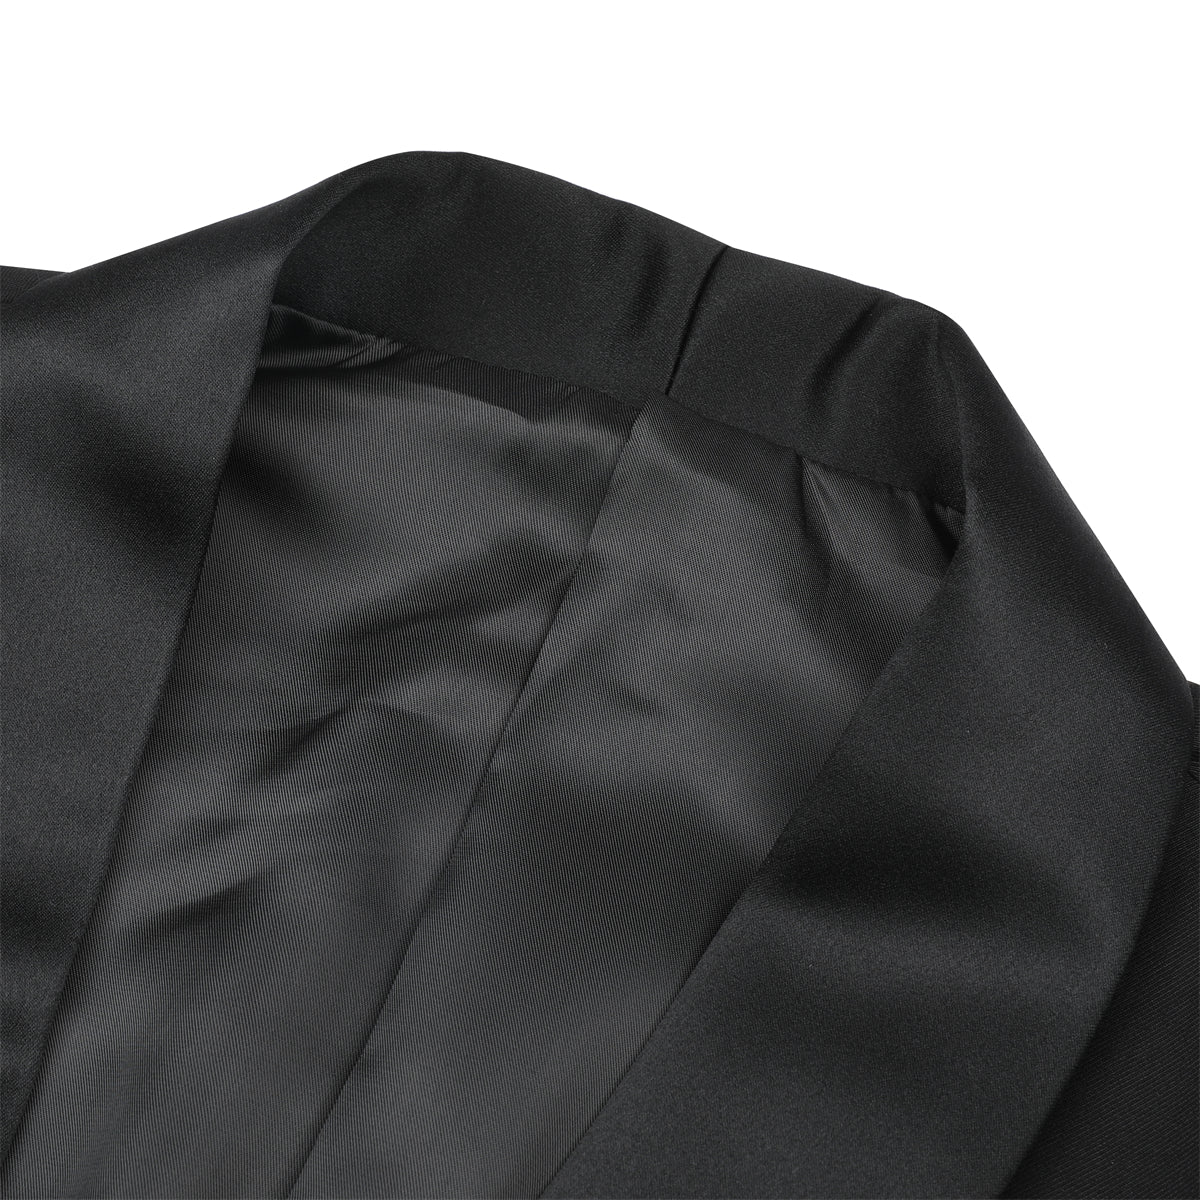 2-Piece Slim Fit One Button Casual Black Suit